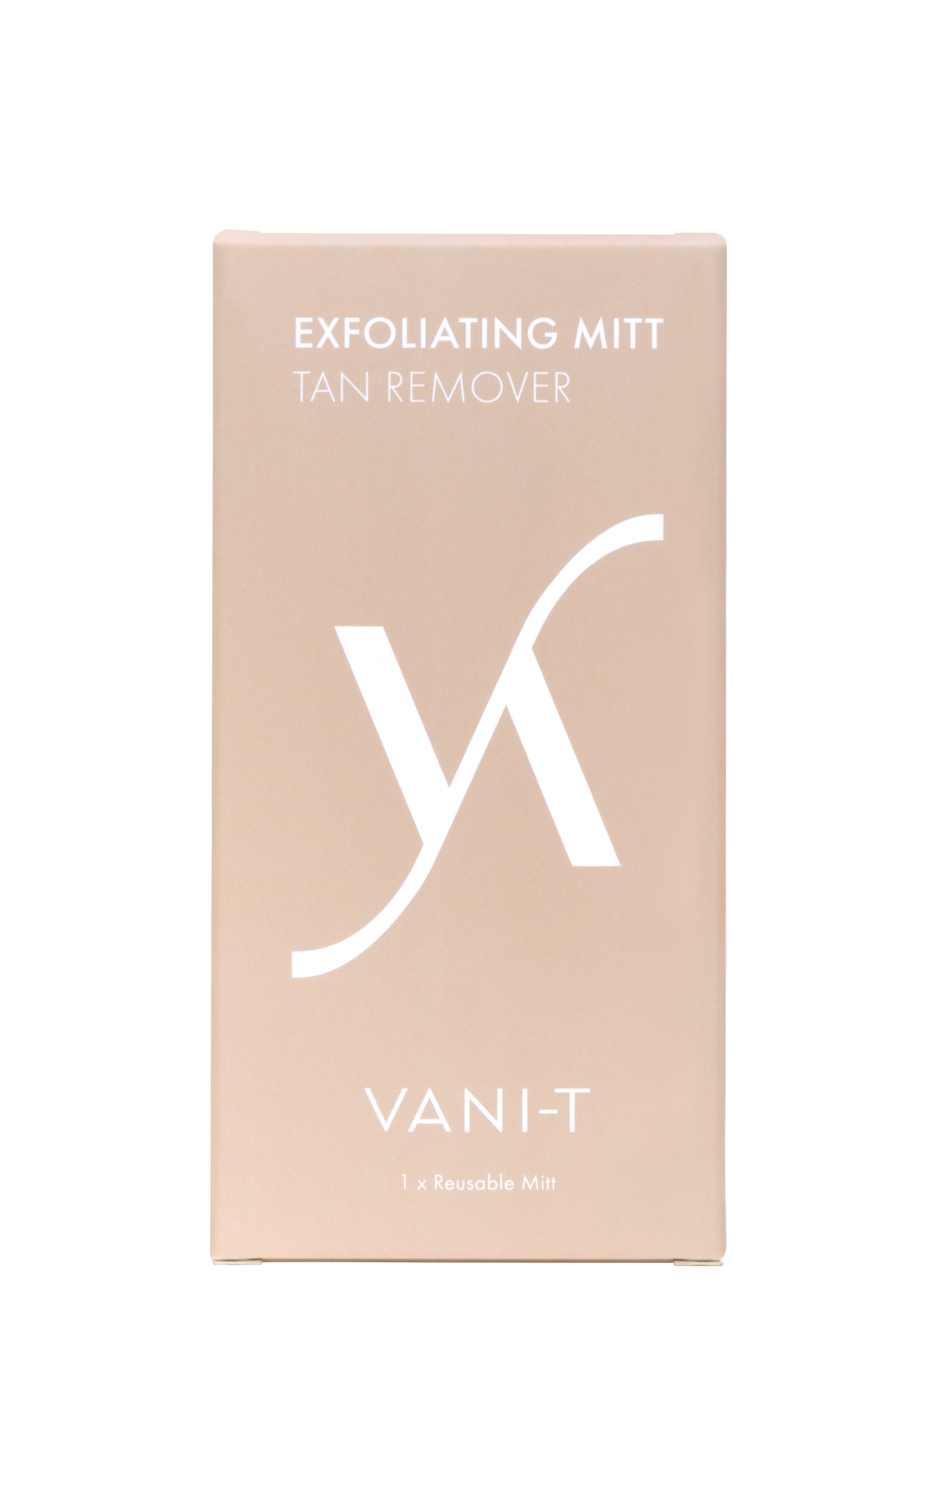 VANI-T Exfoliating Mitt